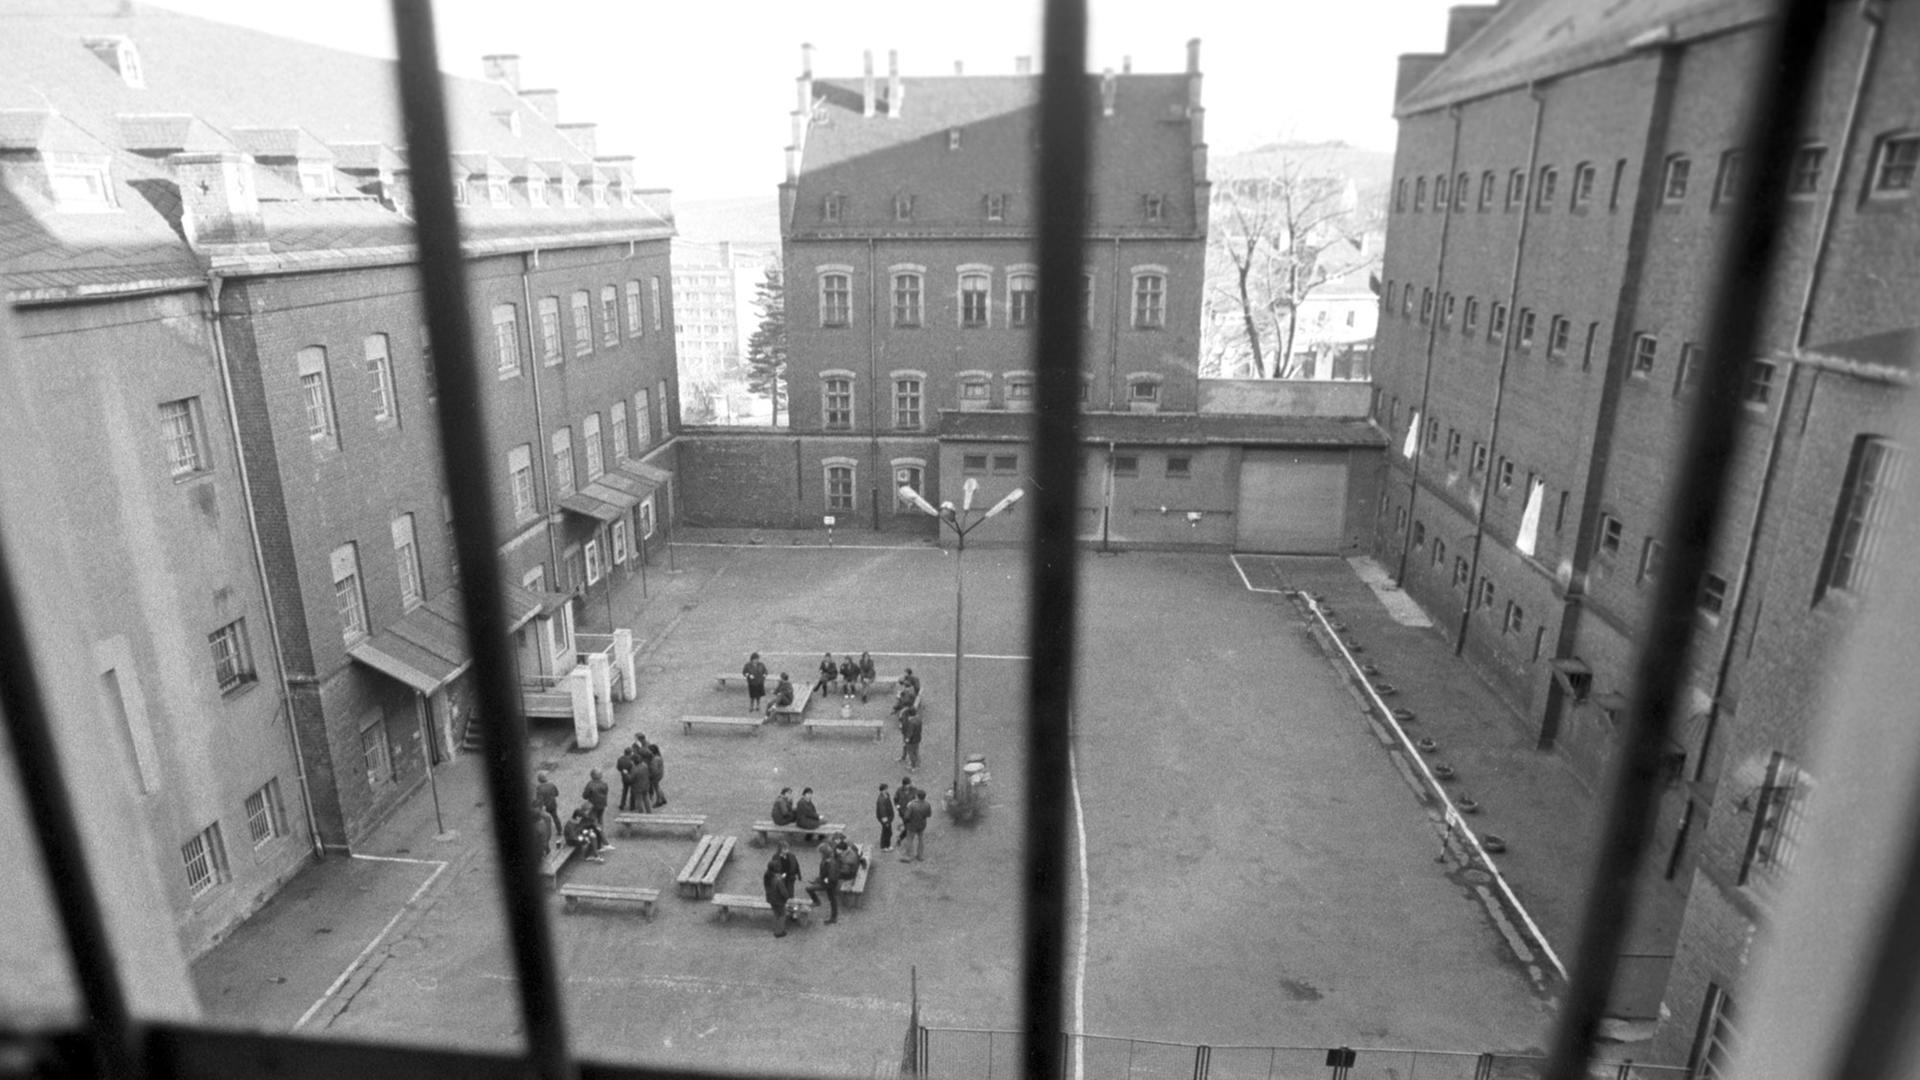 Blick durch ein vergittertes Fenster einer Gefängniszelle im Frauengefängnis Stollberg - Hoheneck, aufgenommen im Dezember 1989. In Hoheneck waren kriminelle und politische Gefangene untergebracht. Mit der politischen Wende im Herbst 1989 in der DDR forderten in vielen Strafvollzugsanstalten der DDR Häftlinge ihre Rechte ein.